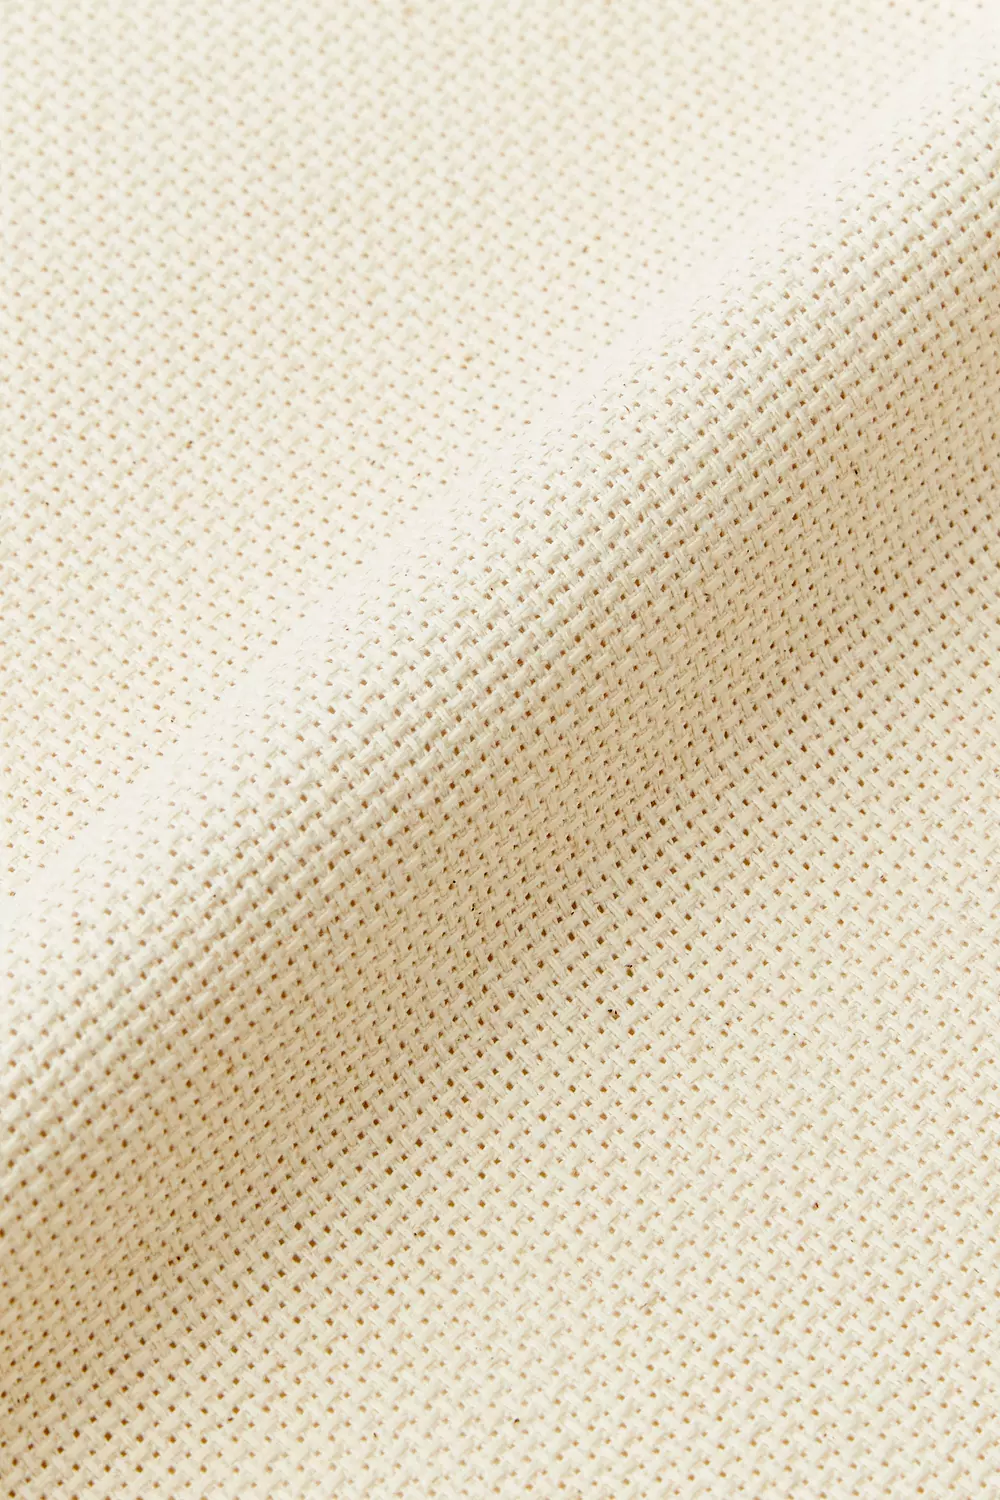 DMC Precut Cross Stitch Aida Fabric Cloth - 14 Count - 38.1X45.7cm Black -  310 269 : Shop Now for DMC Precut Cross Stitch Aida Fabric Cloth - 14 Count  - 38.1X45.7cm Black - 310 269